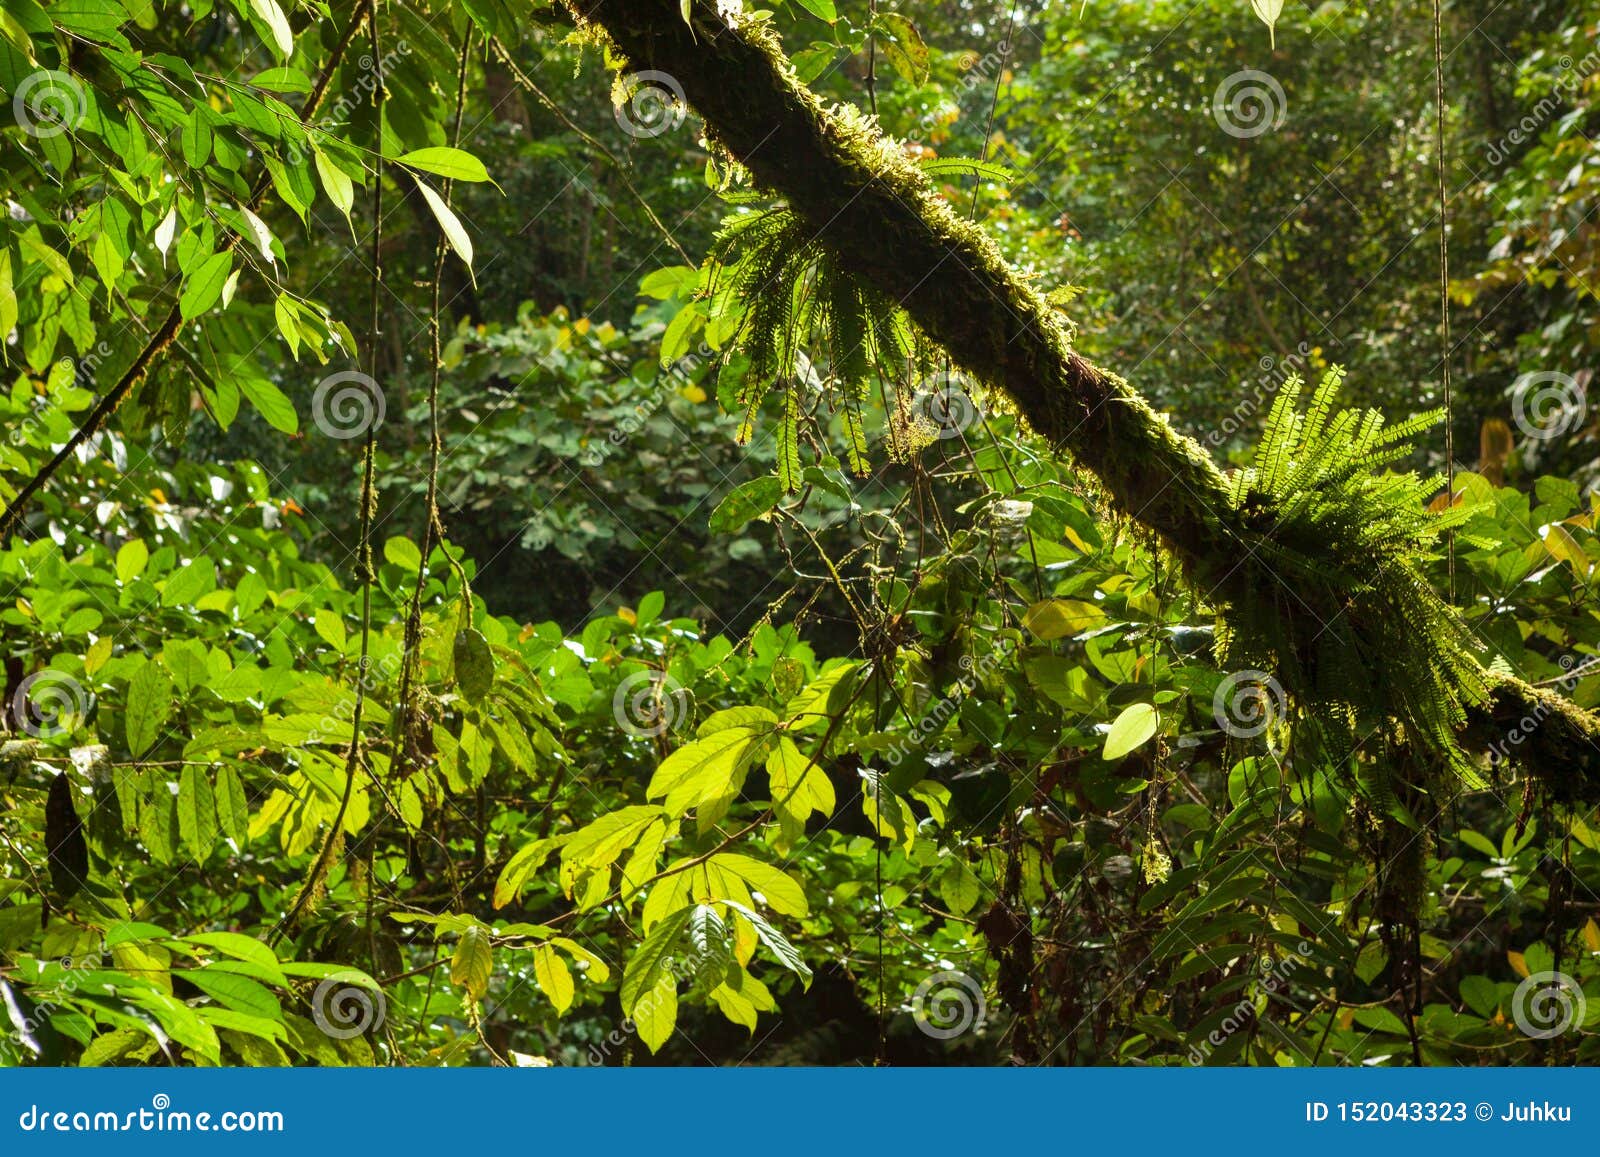 lush forest scene in borneo malaysia